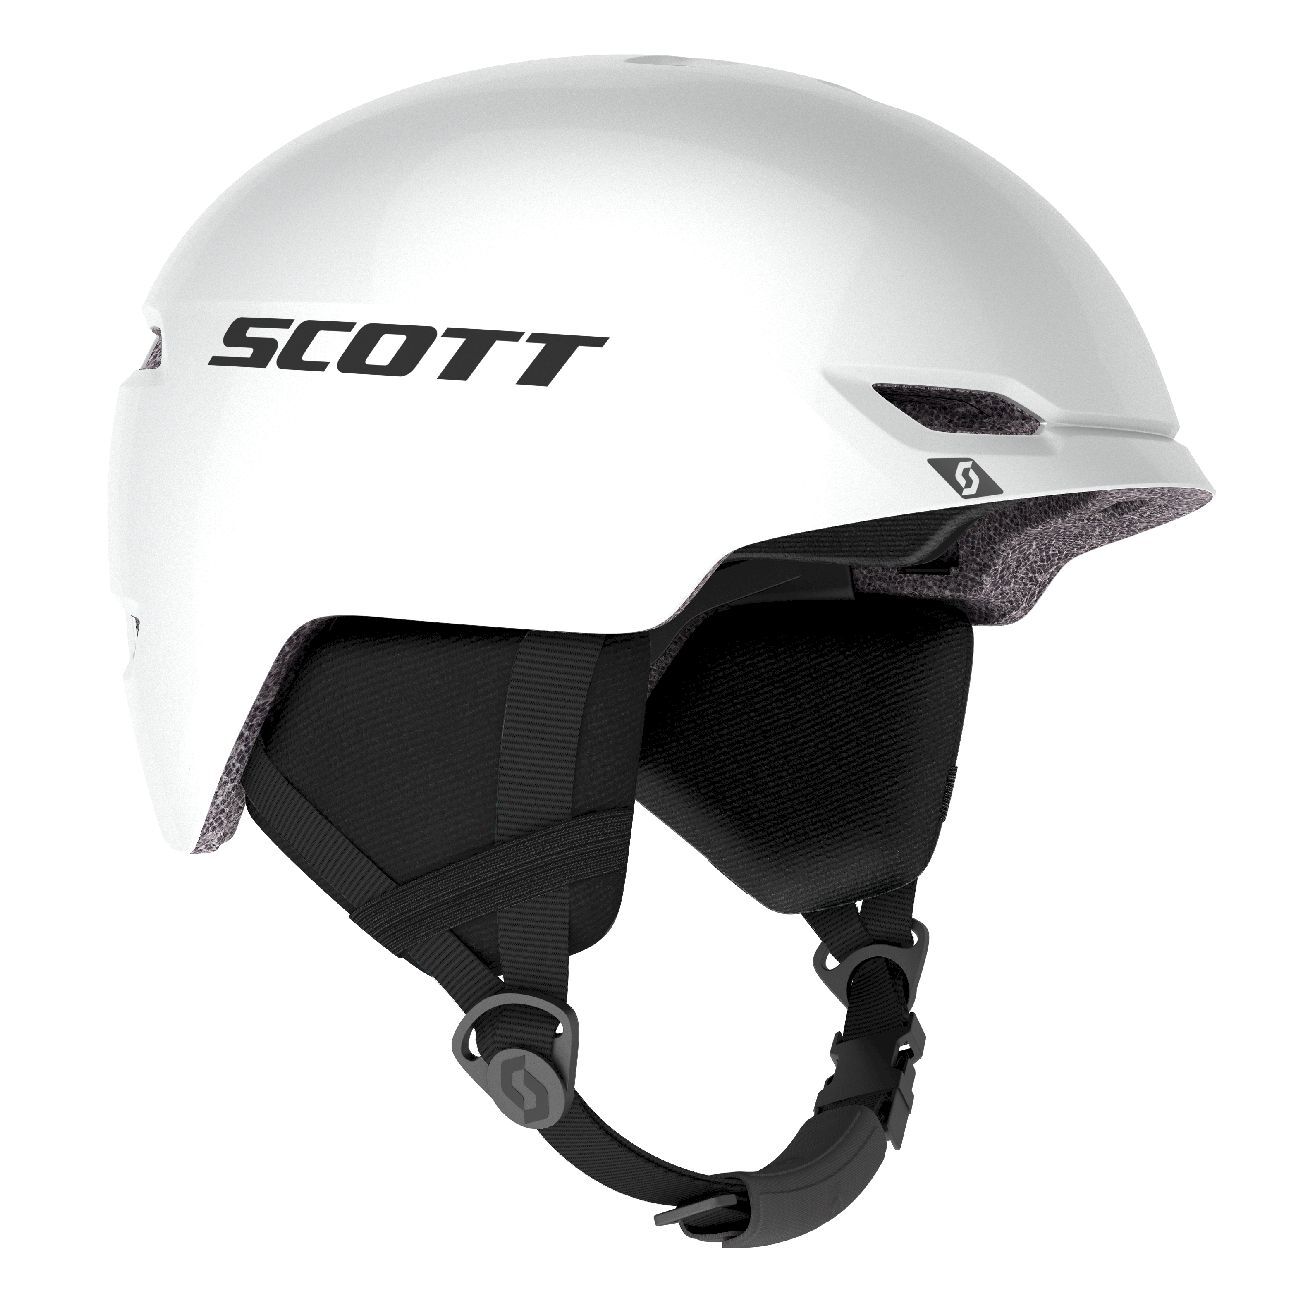 Scott Keeper 2 - Ski helmet